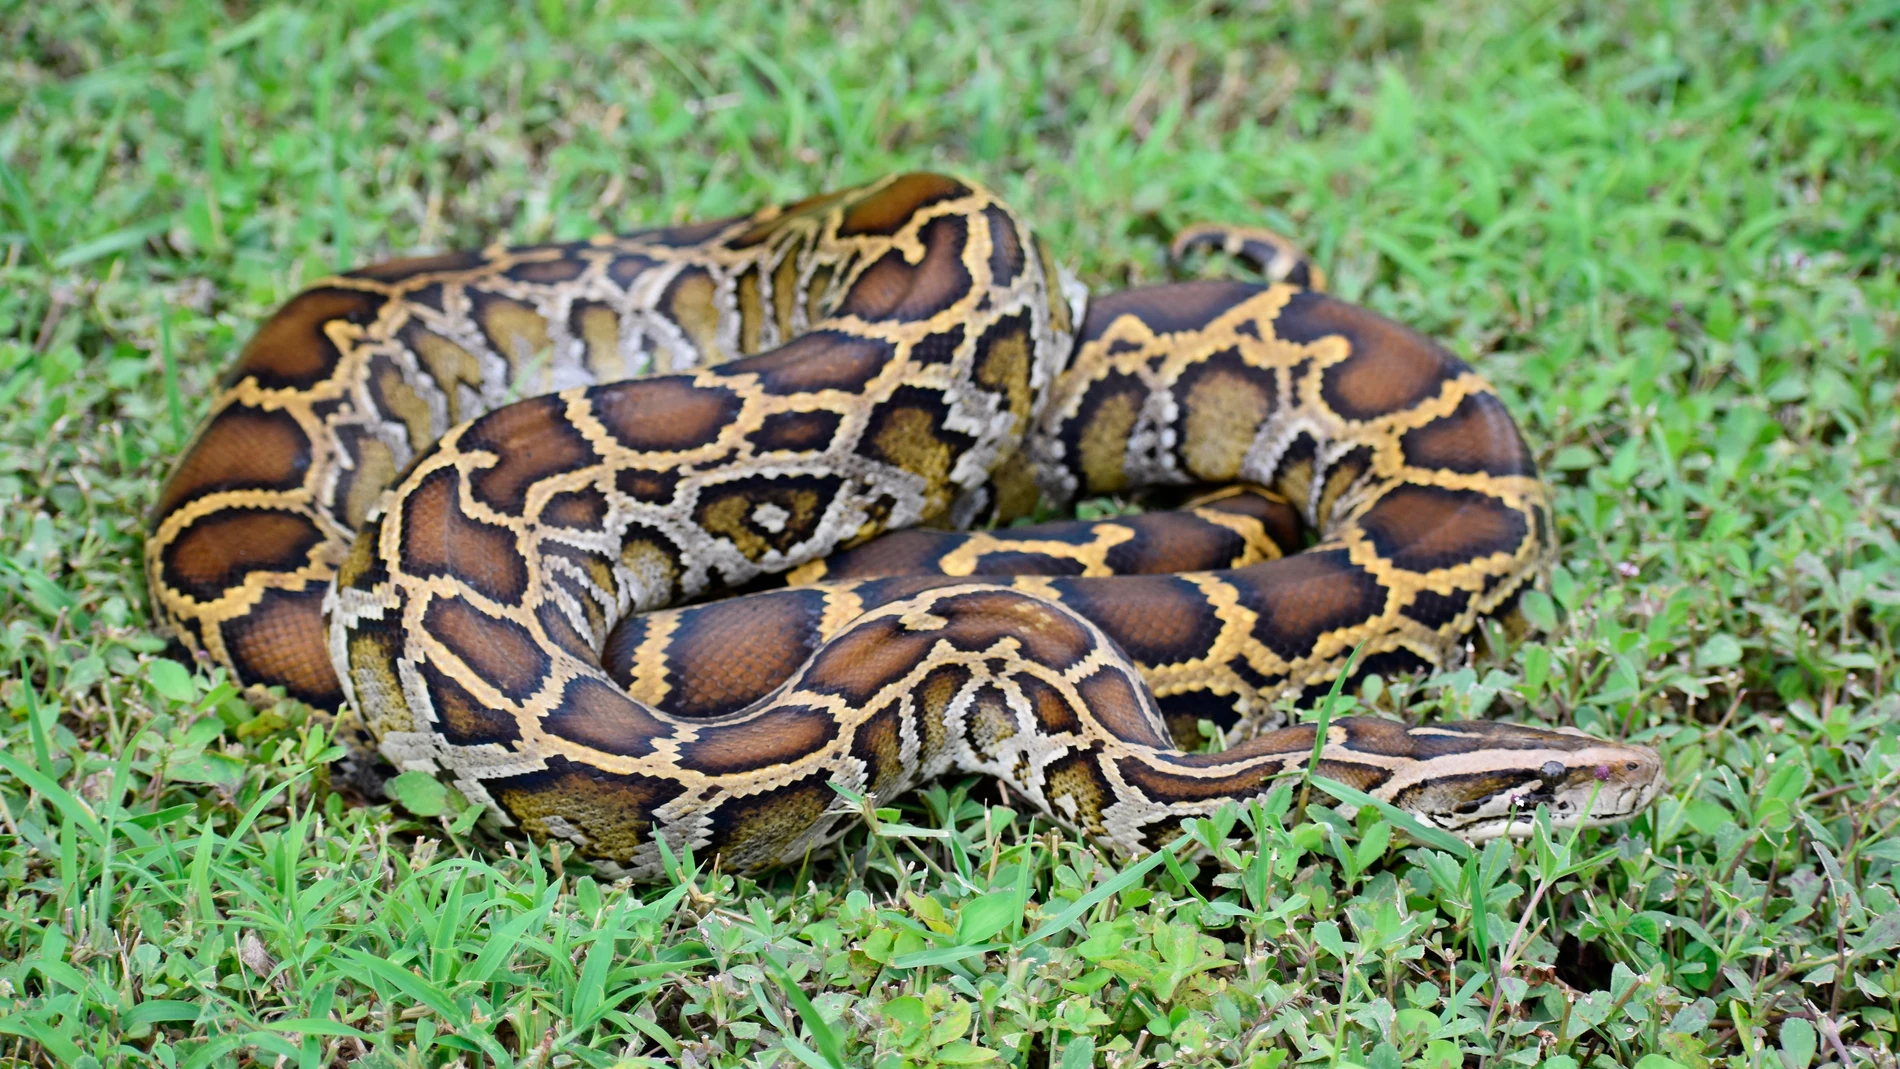 La yararacusú es una especie de serpiente venenosa del género Bothrops que tiene su hábitat en regiones selváticas de Brasil, Bolivia, Paraguay o Argentina.